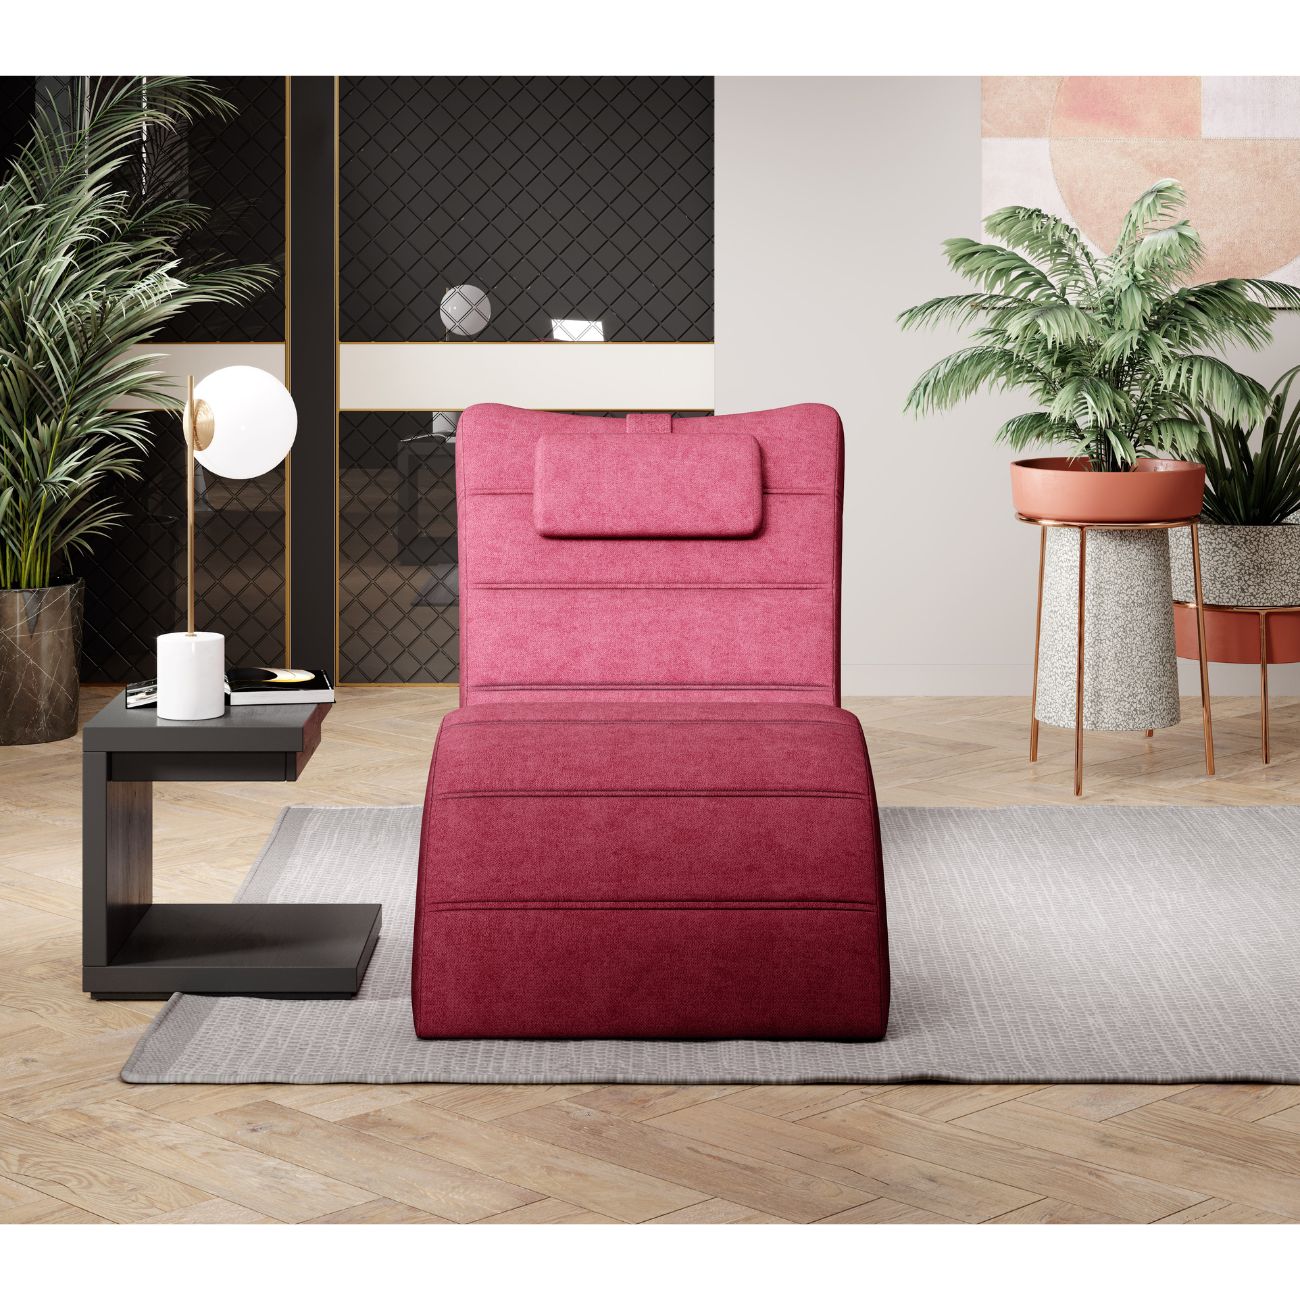 Zdjęcie przedstawiające nowoczesny szezlong do salonu z poduszką pod głowę. Nowoczesny szezlong do salonu Los Angeles to stylowy oraz funkcjonalny mebel do salonu